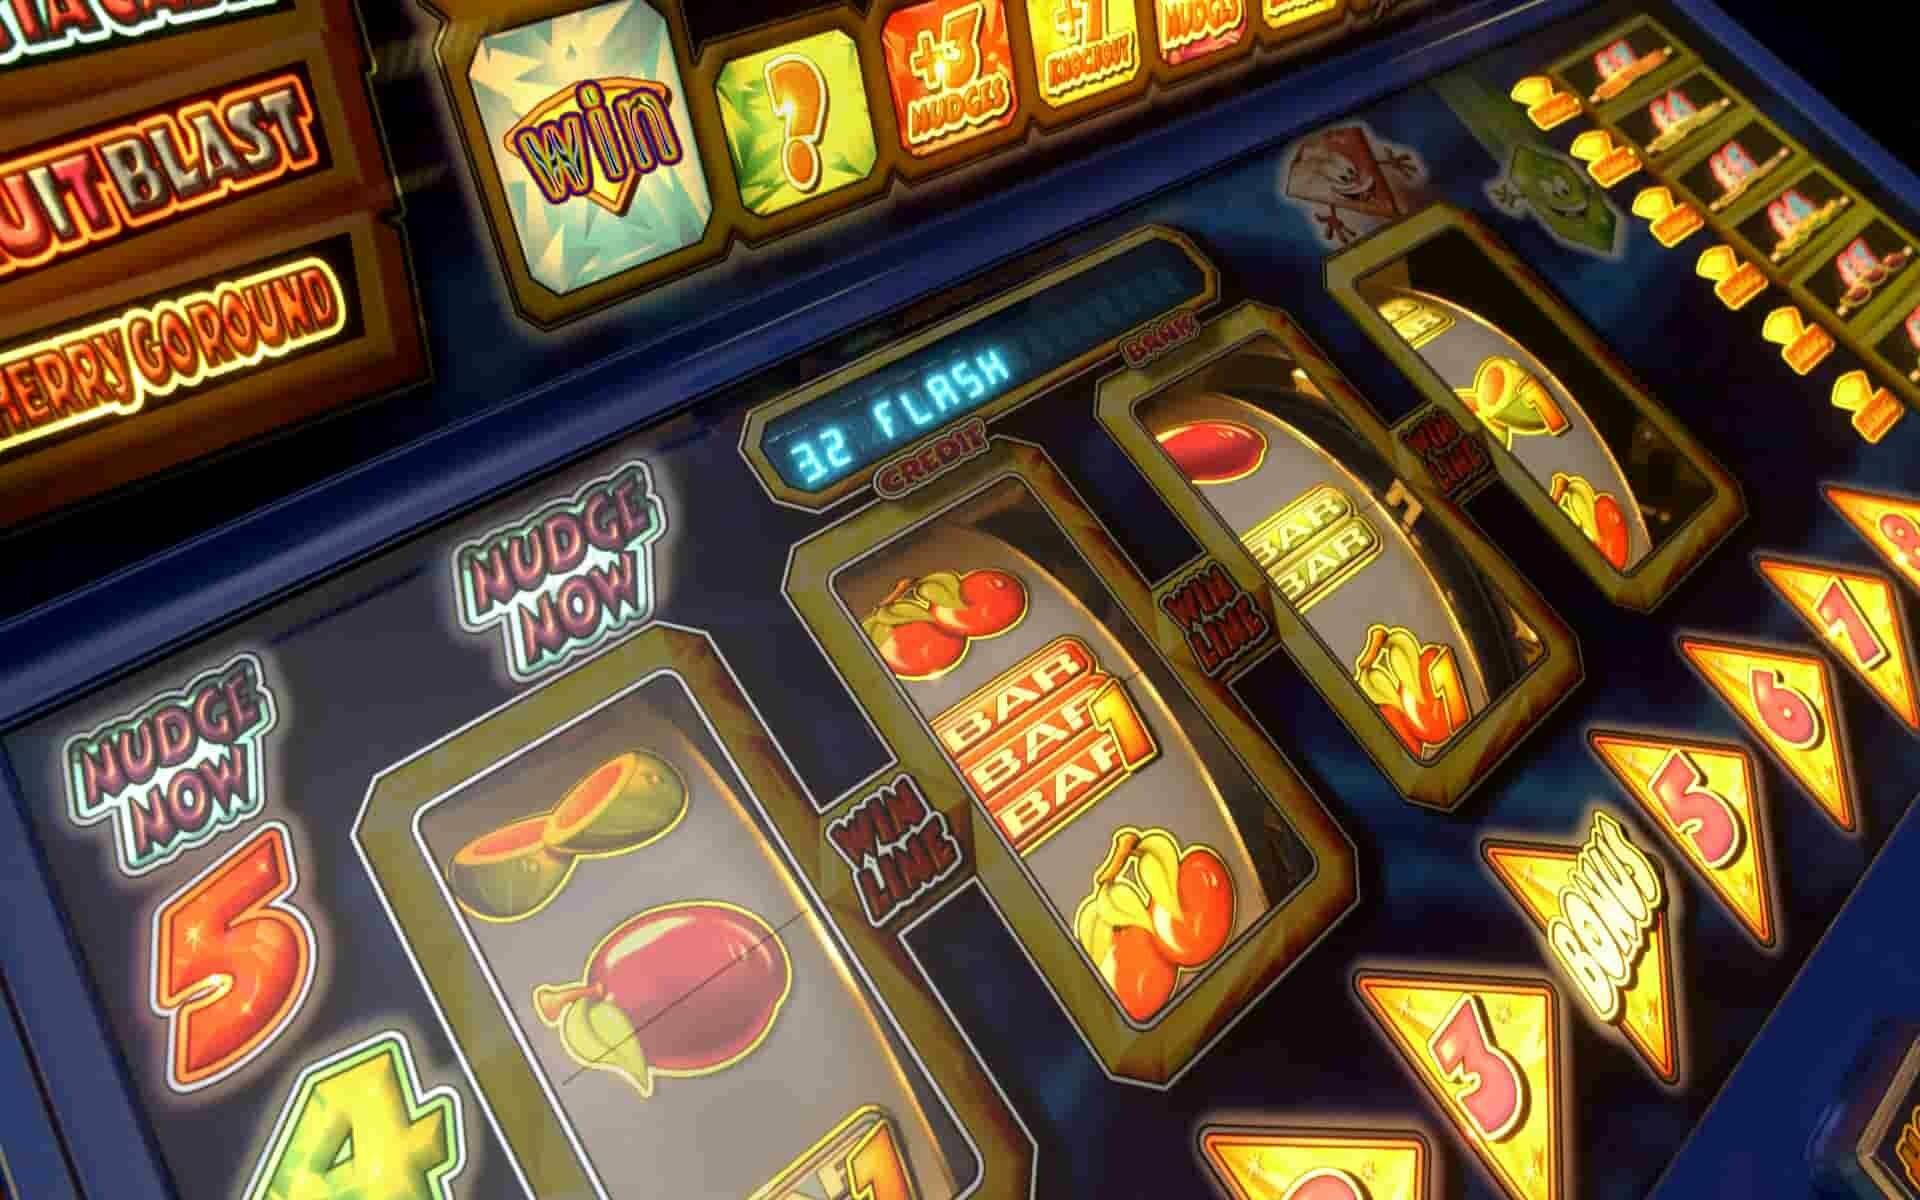 Игровые автоматы на русском языке онлайн казино фильм 1995 смотреть онлайн 1080 hd дублированный